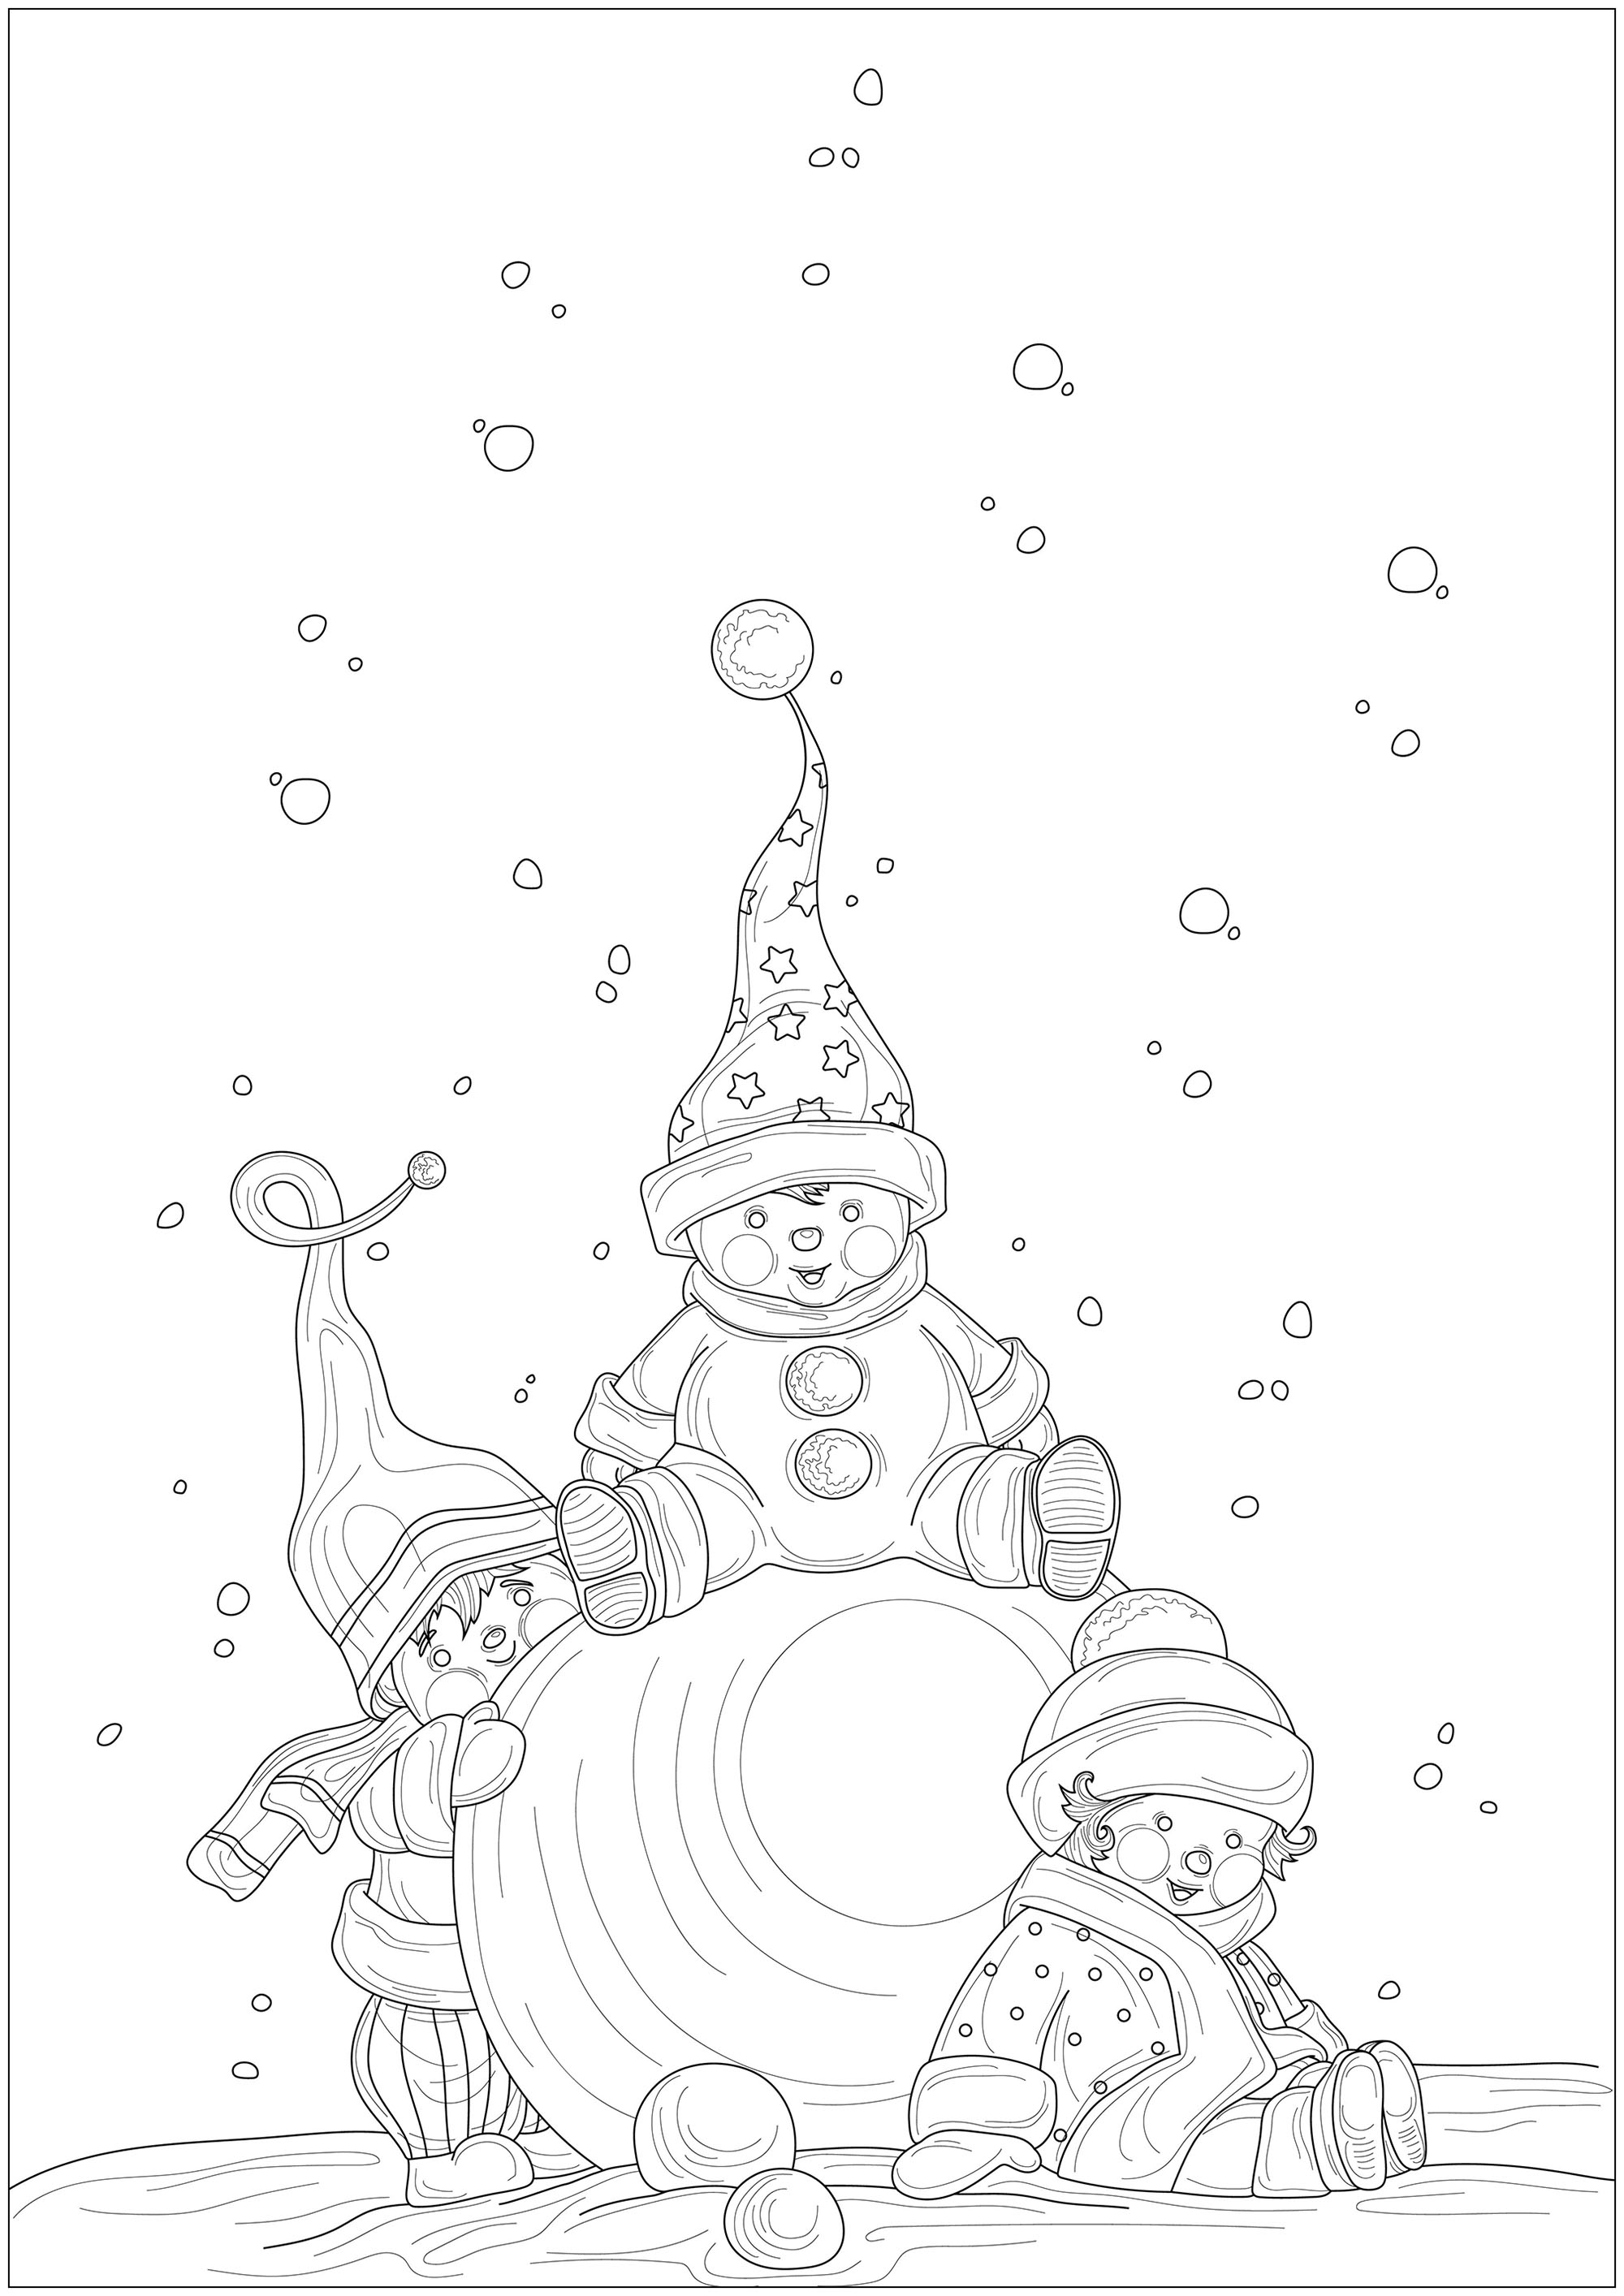 Tres niños con gorros y bufandas juegan con una gran bola de nieve, parecen duendes, Origen : 123rf   Artista : tanyabanku